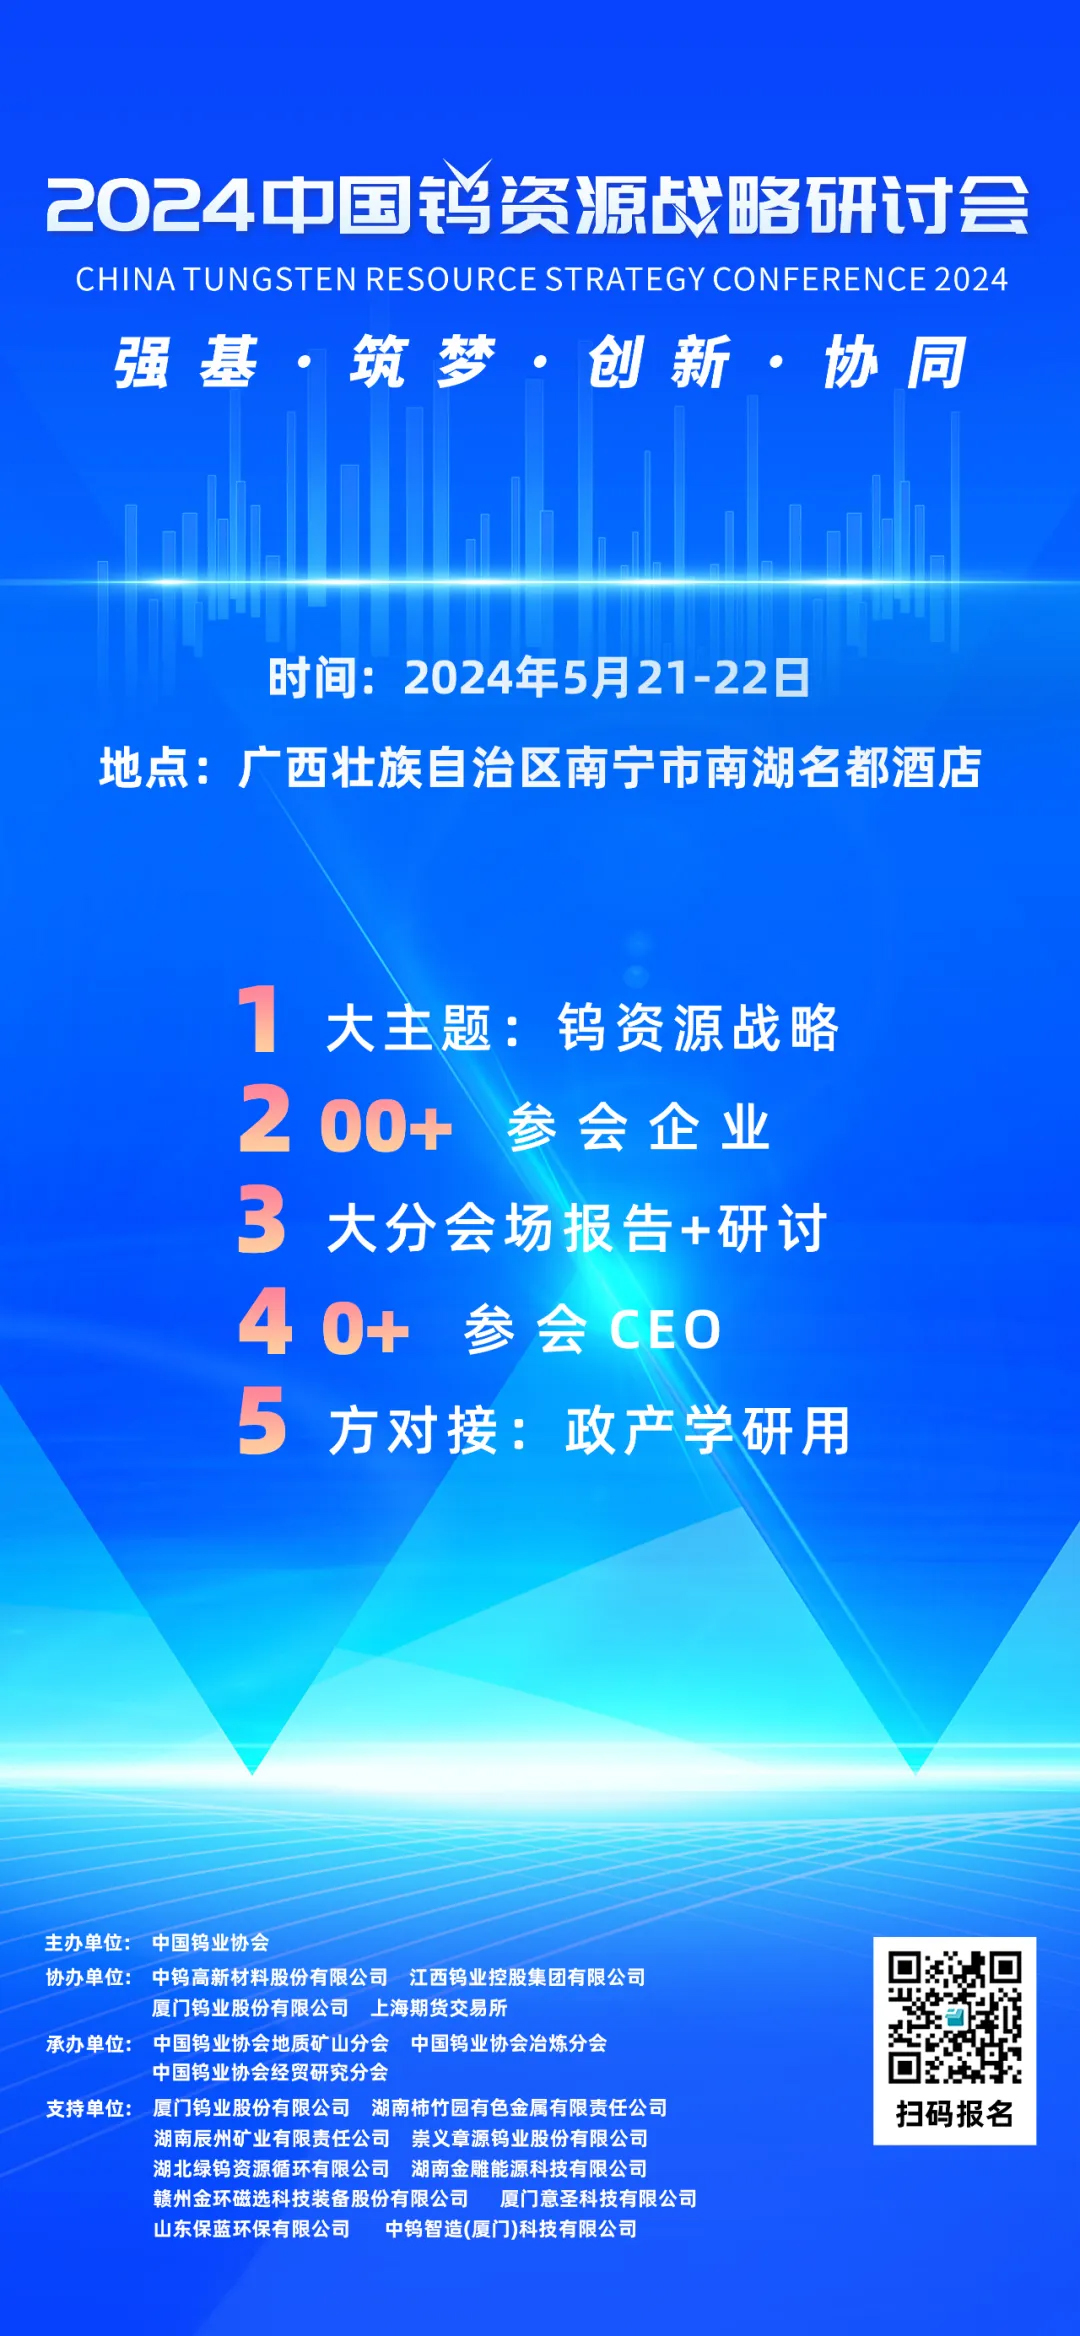 中国钨资源战略研讨会将于2024年5月21-22日在南宁举办